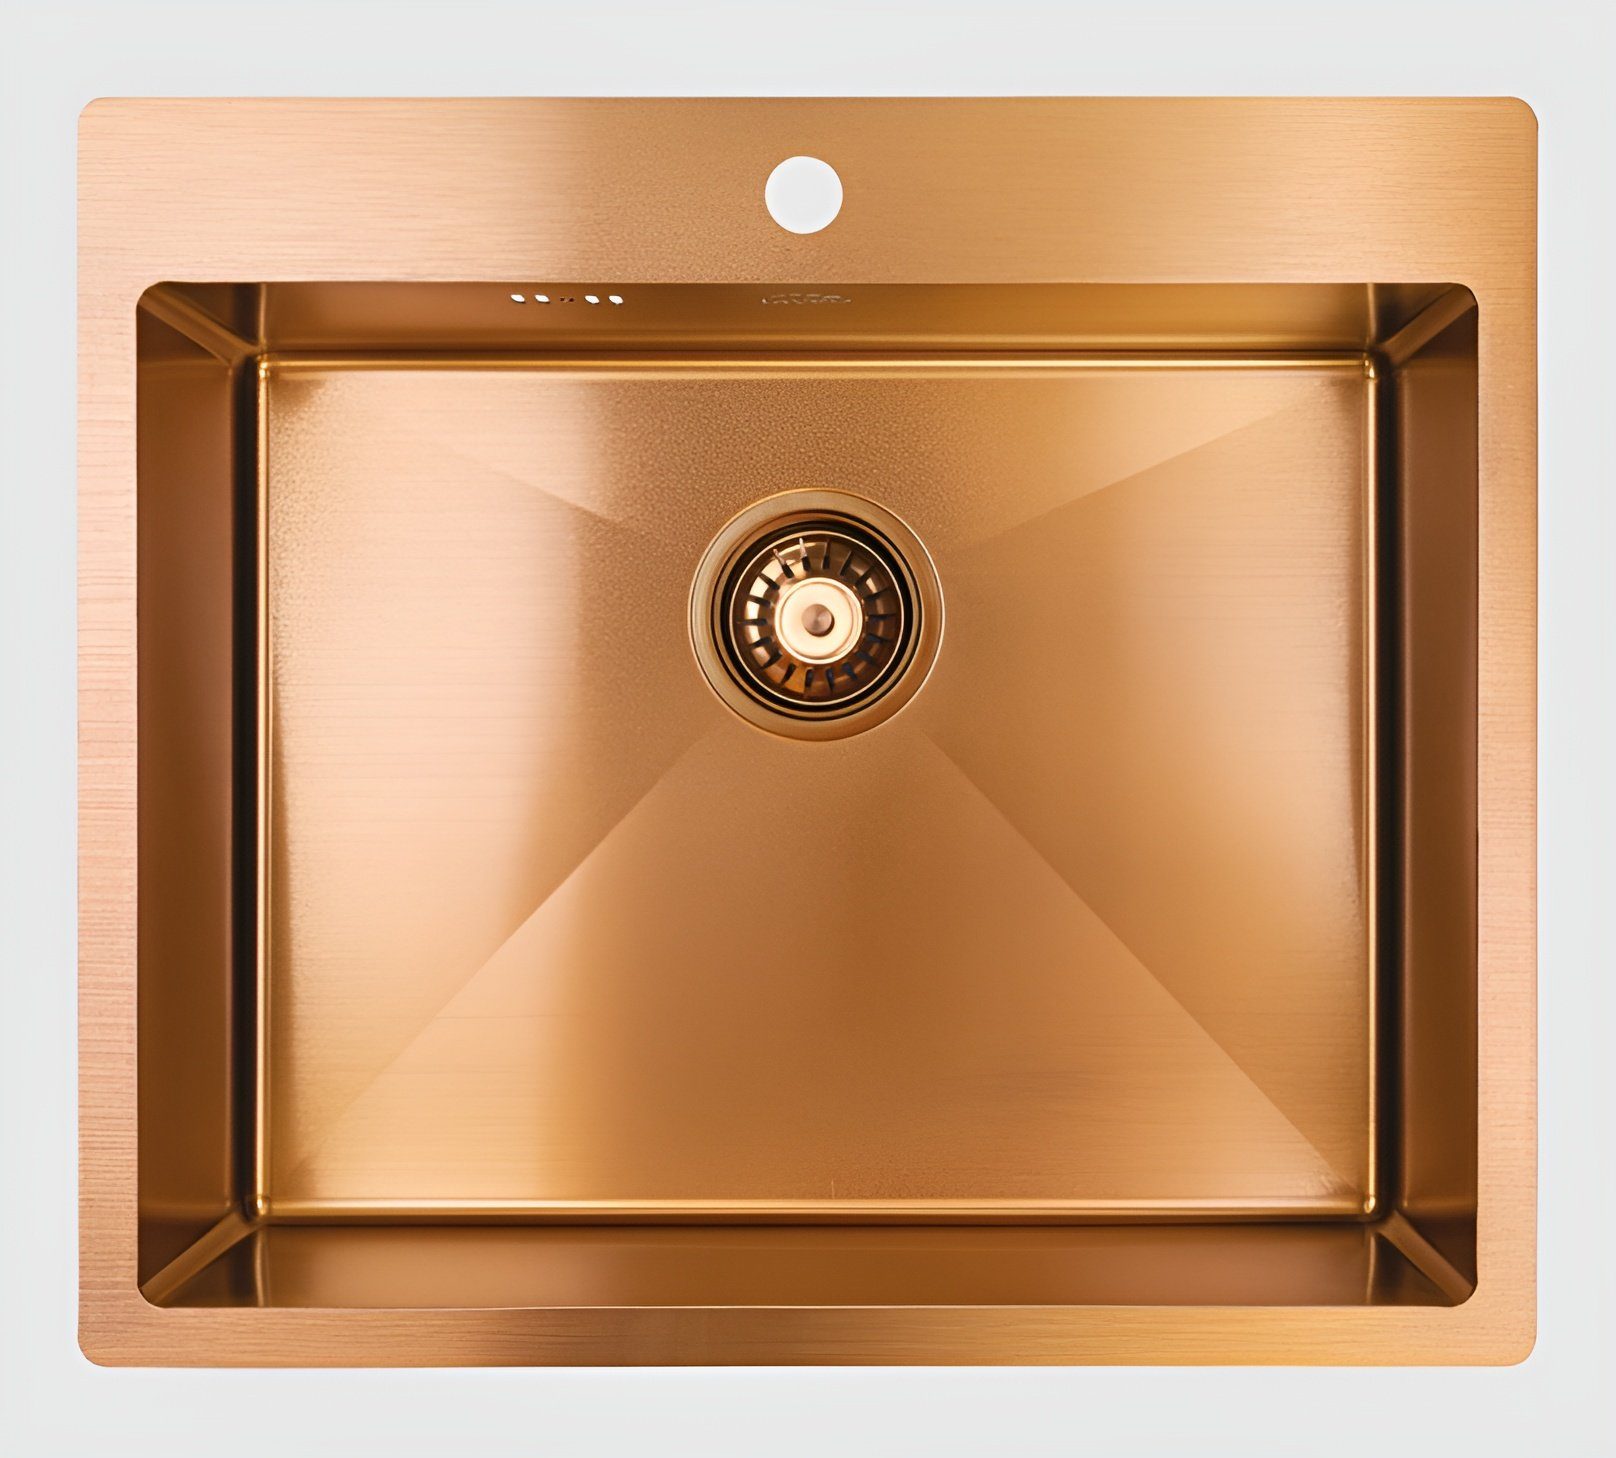 KOLMAN Küchenspüle Einzelbecken Marmara Stahl Spülbecken, Rechteckig, 51/59 cm, Gold Kupfer, Space Saving Siphon GRATIS